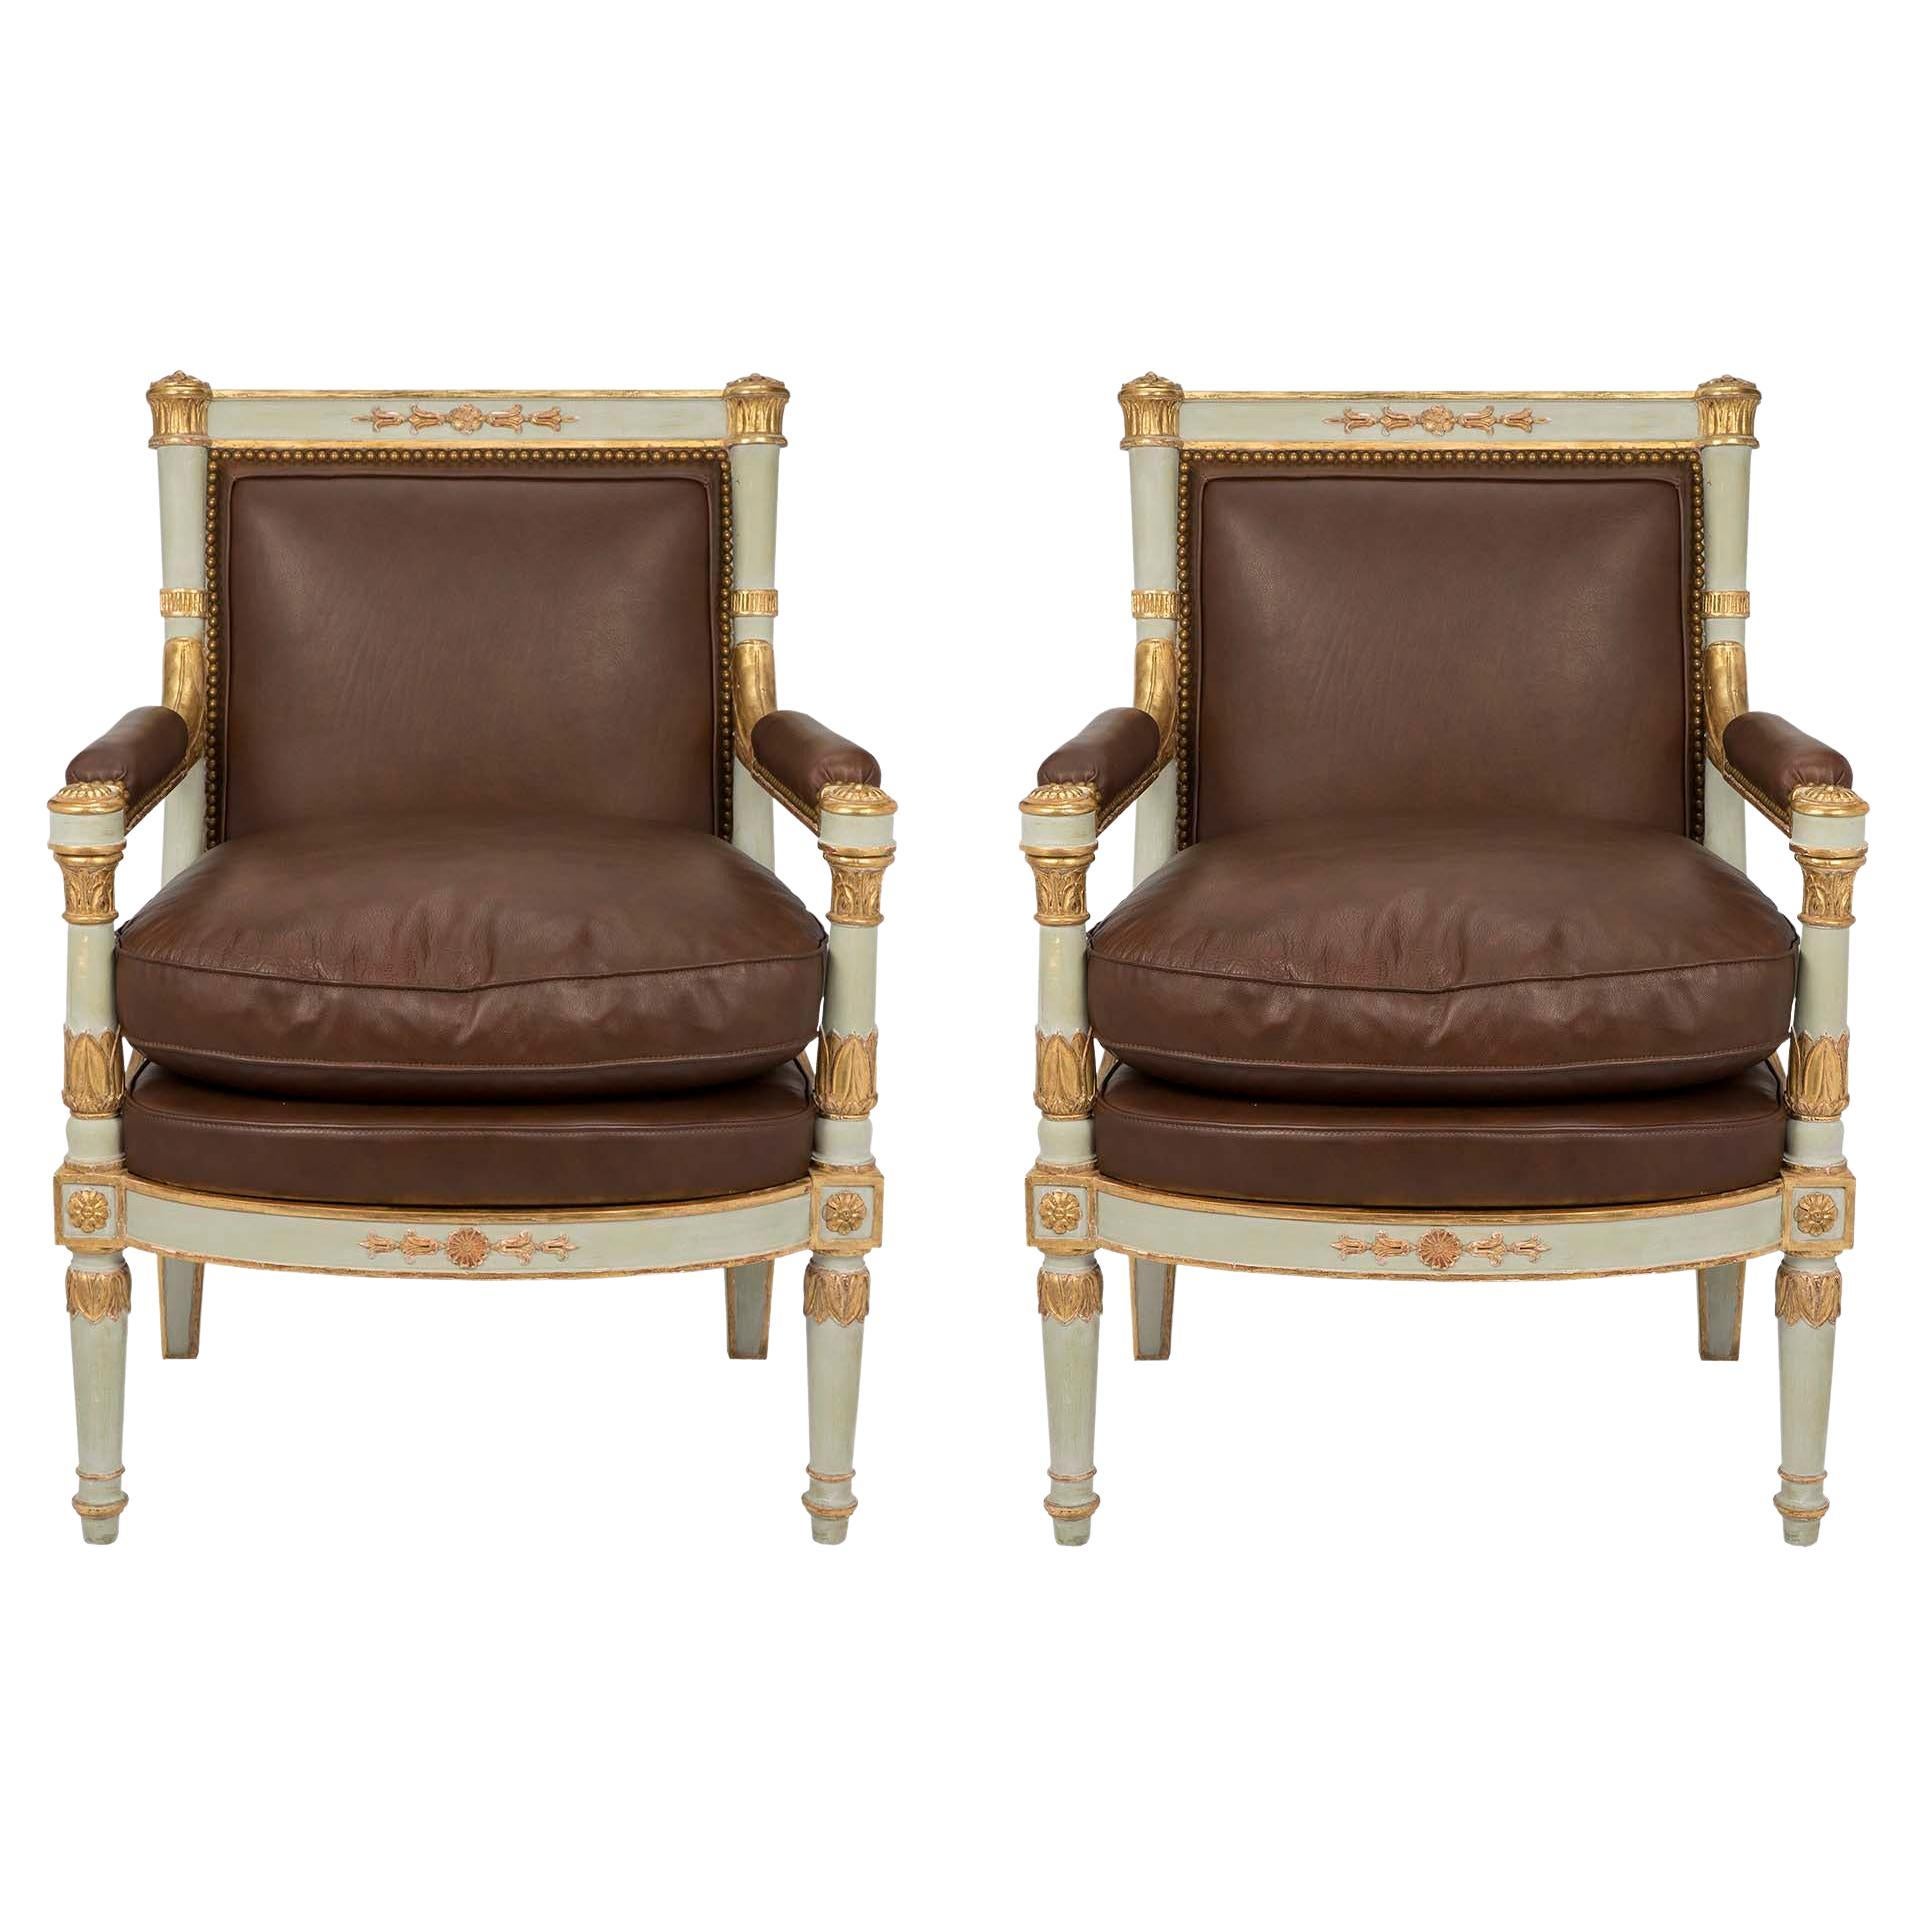 Paire de fauteuils italiens de style néoclassique du début du XIXe siècle